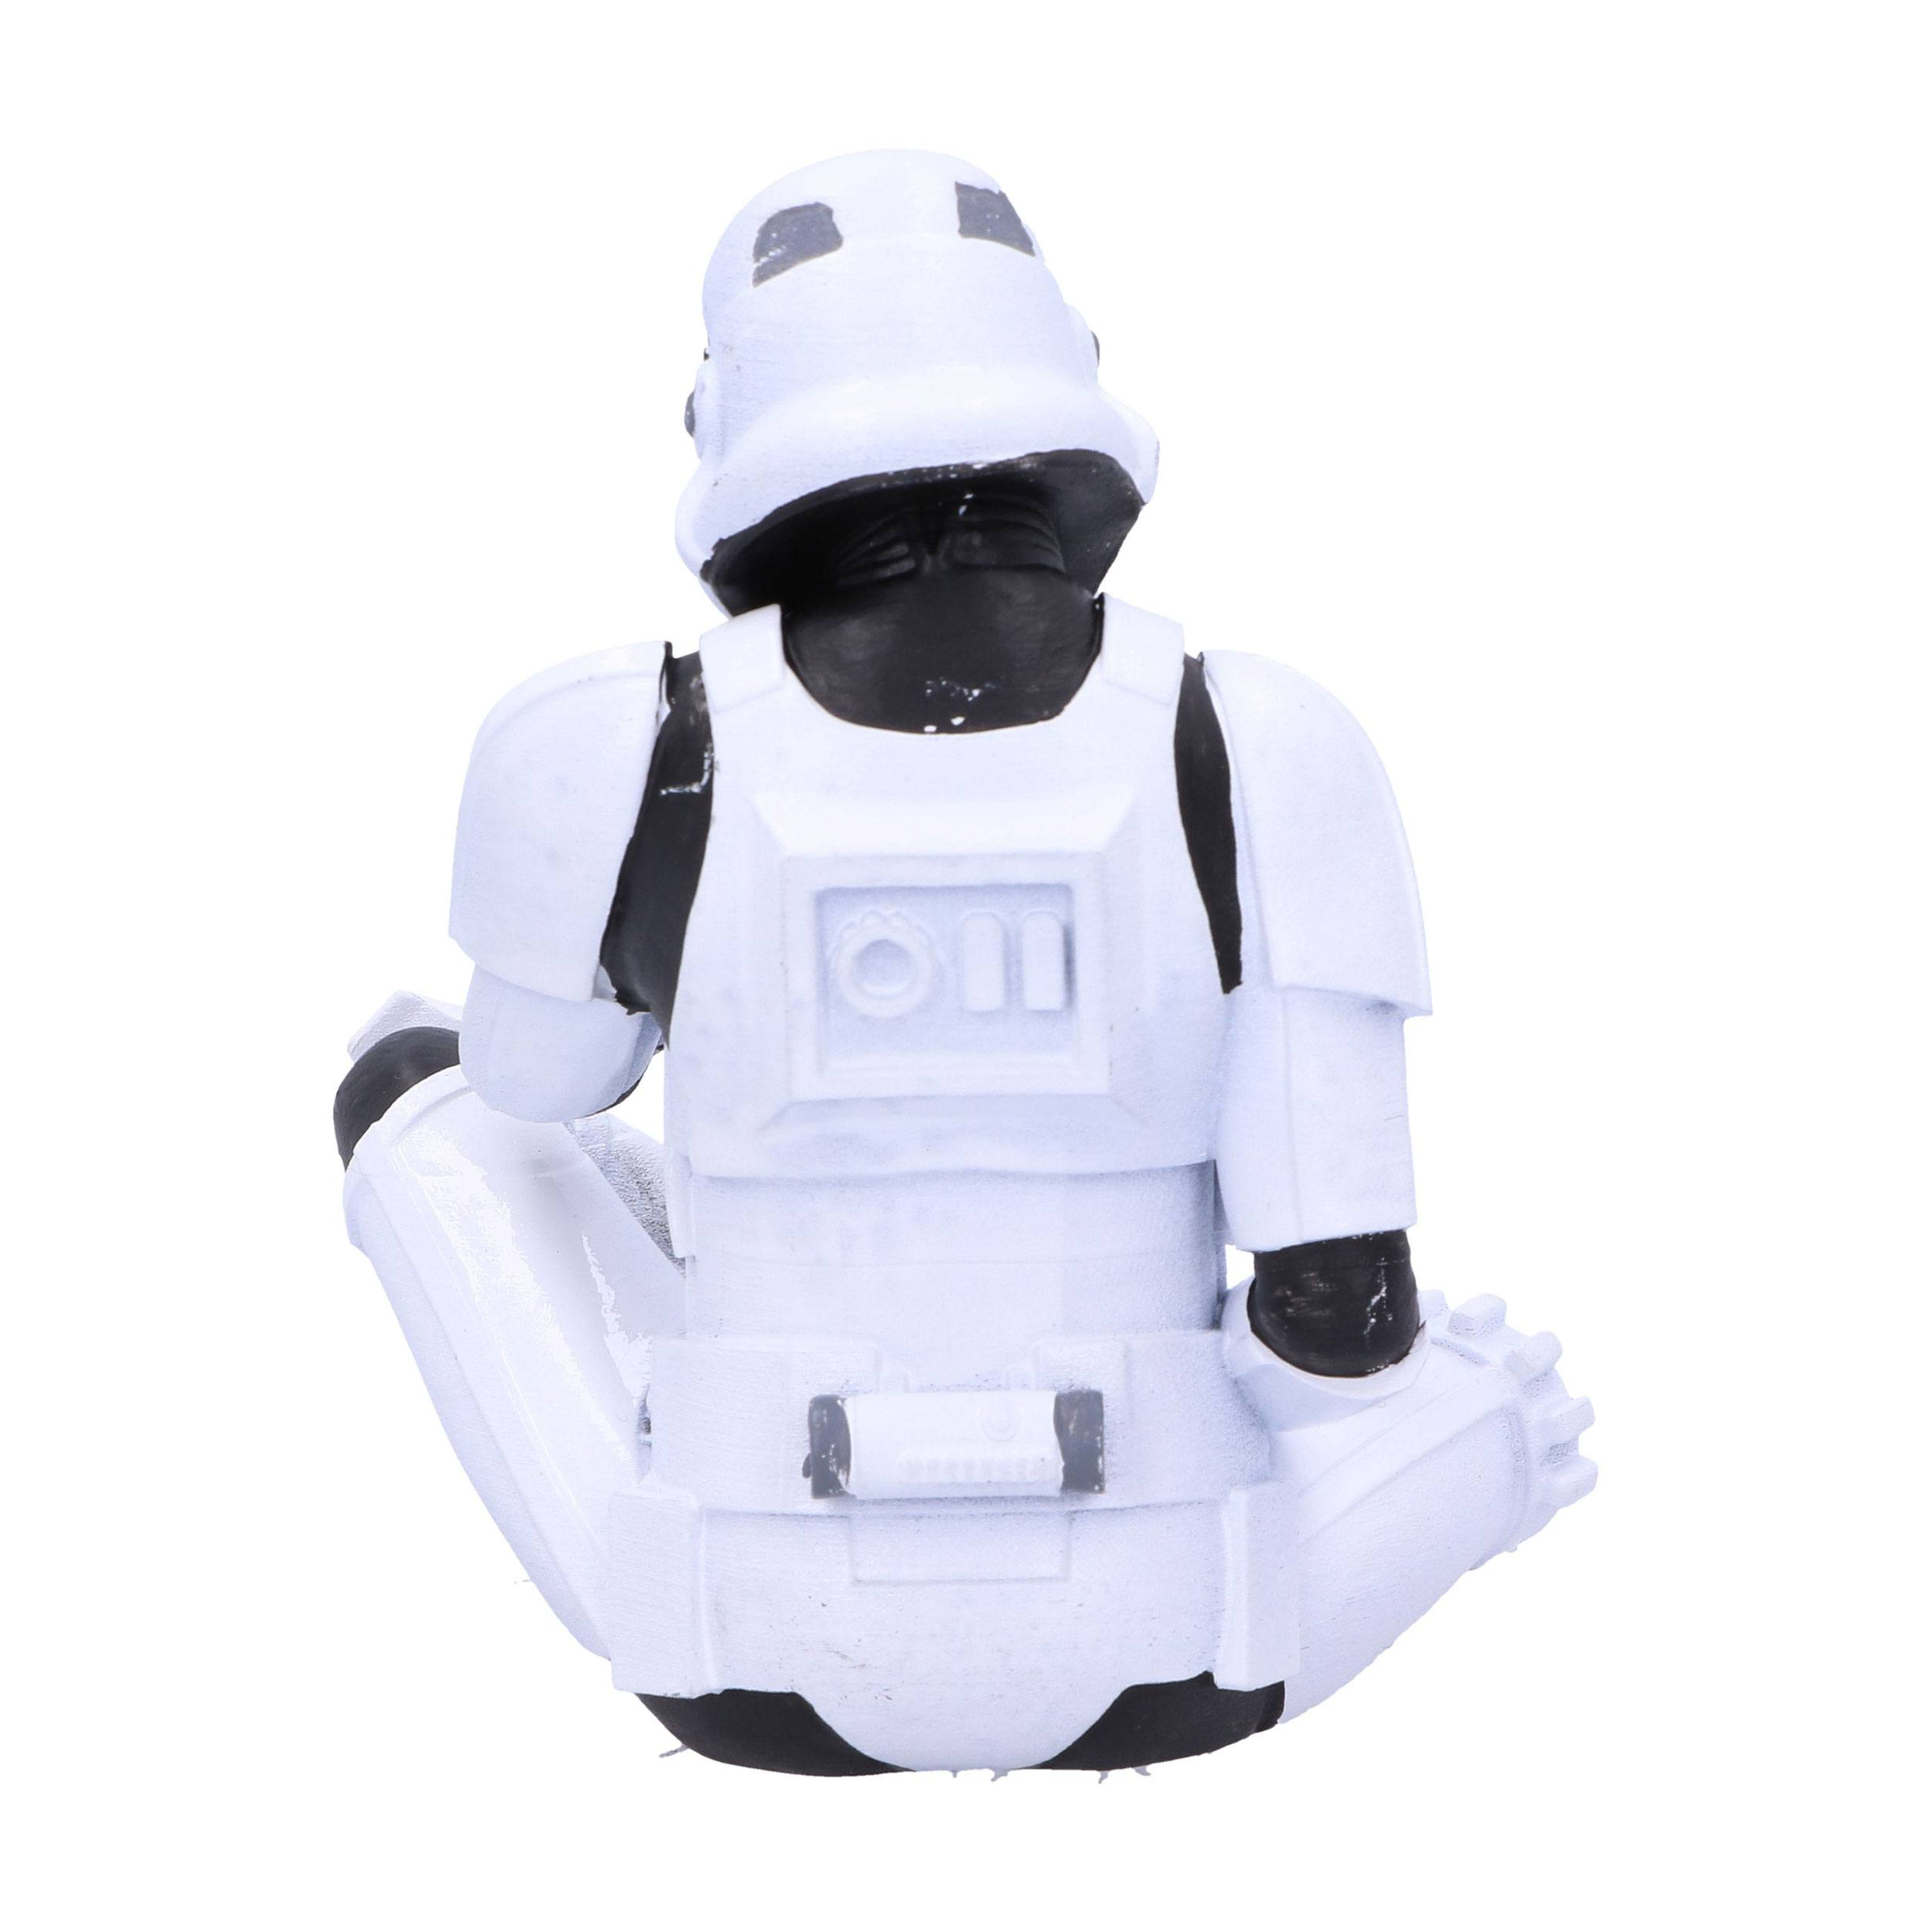 NEMESIS NOW Original Evil Actionfigur No See Stormtrooper Figur: 10cm